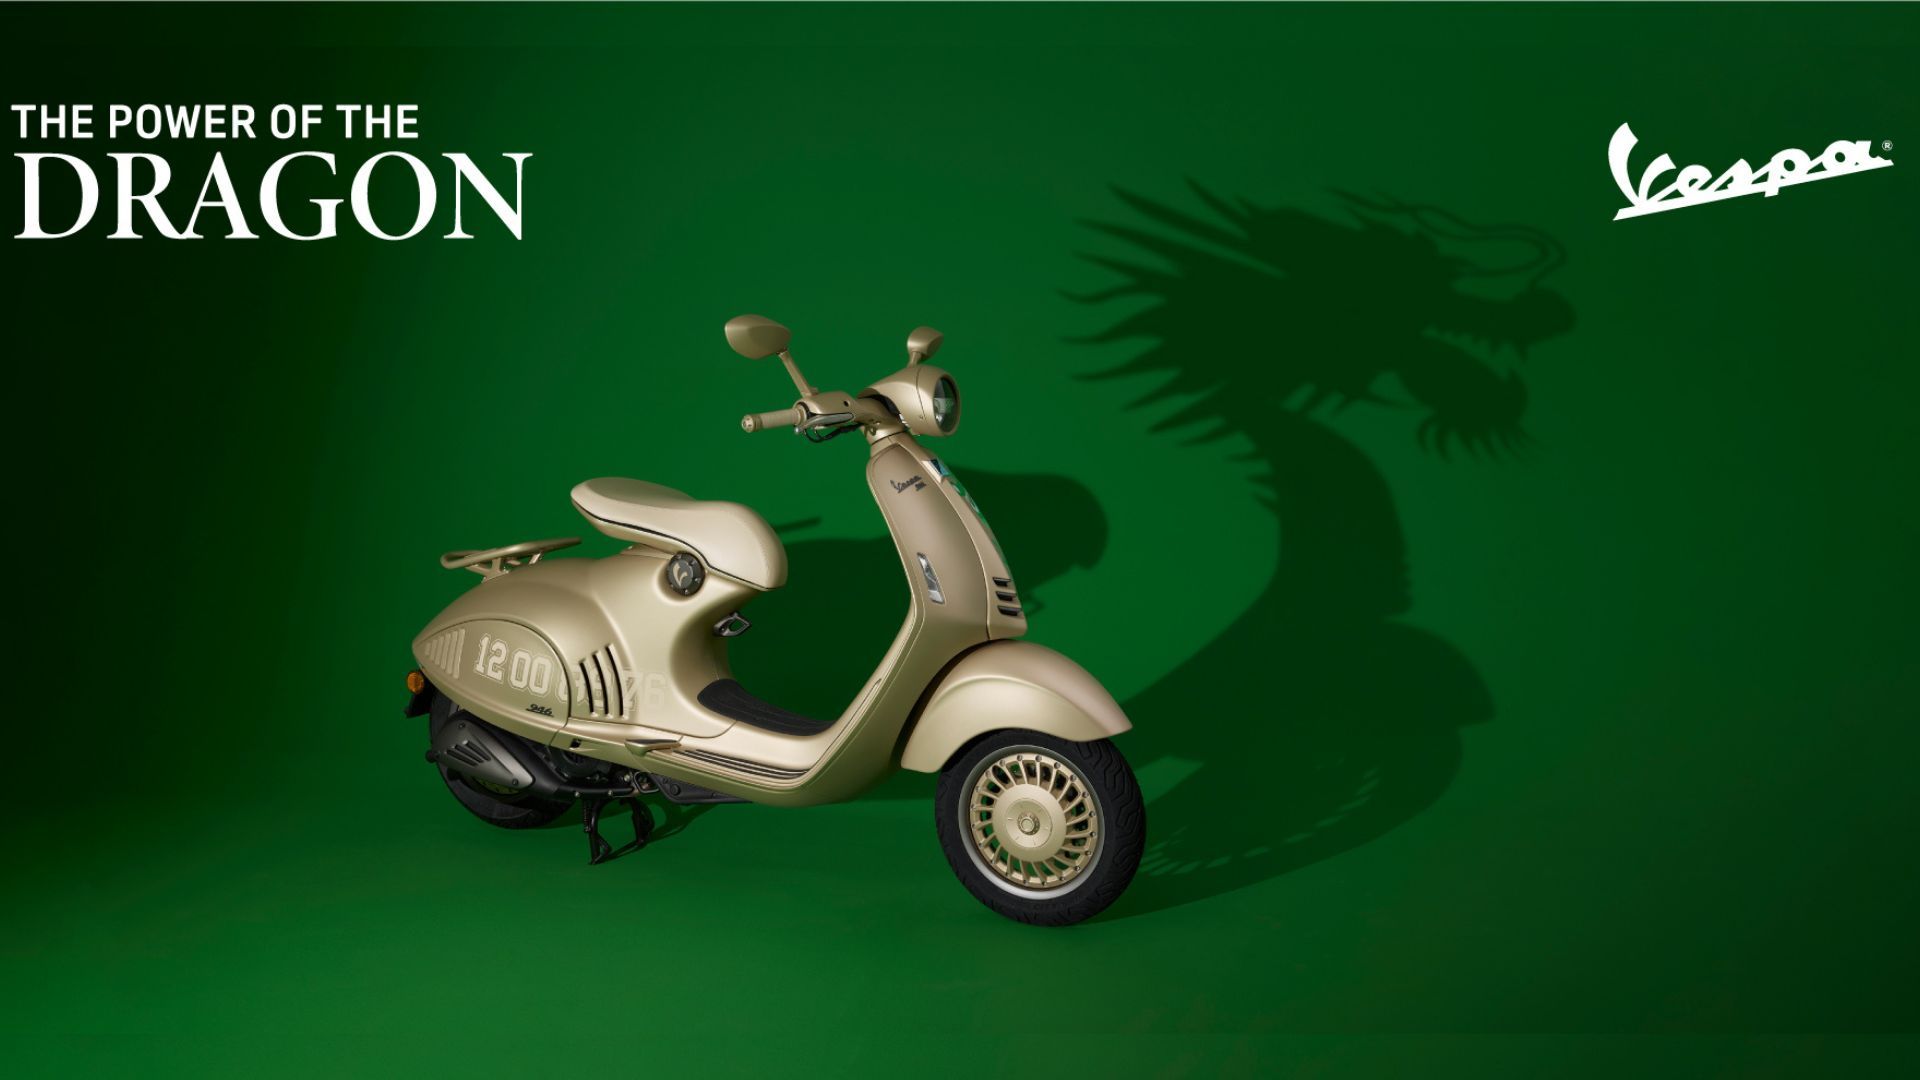 Vespa 946 Dragon, skuter ikonik dengan desain naga emas memukau, hadir di Indonesia!